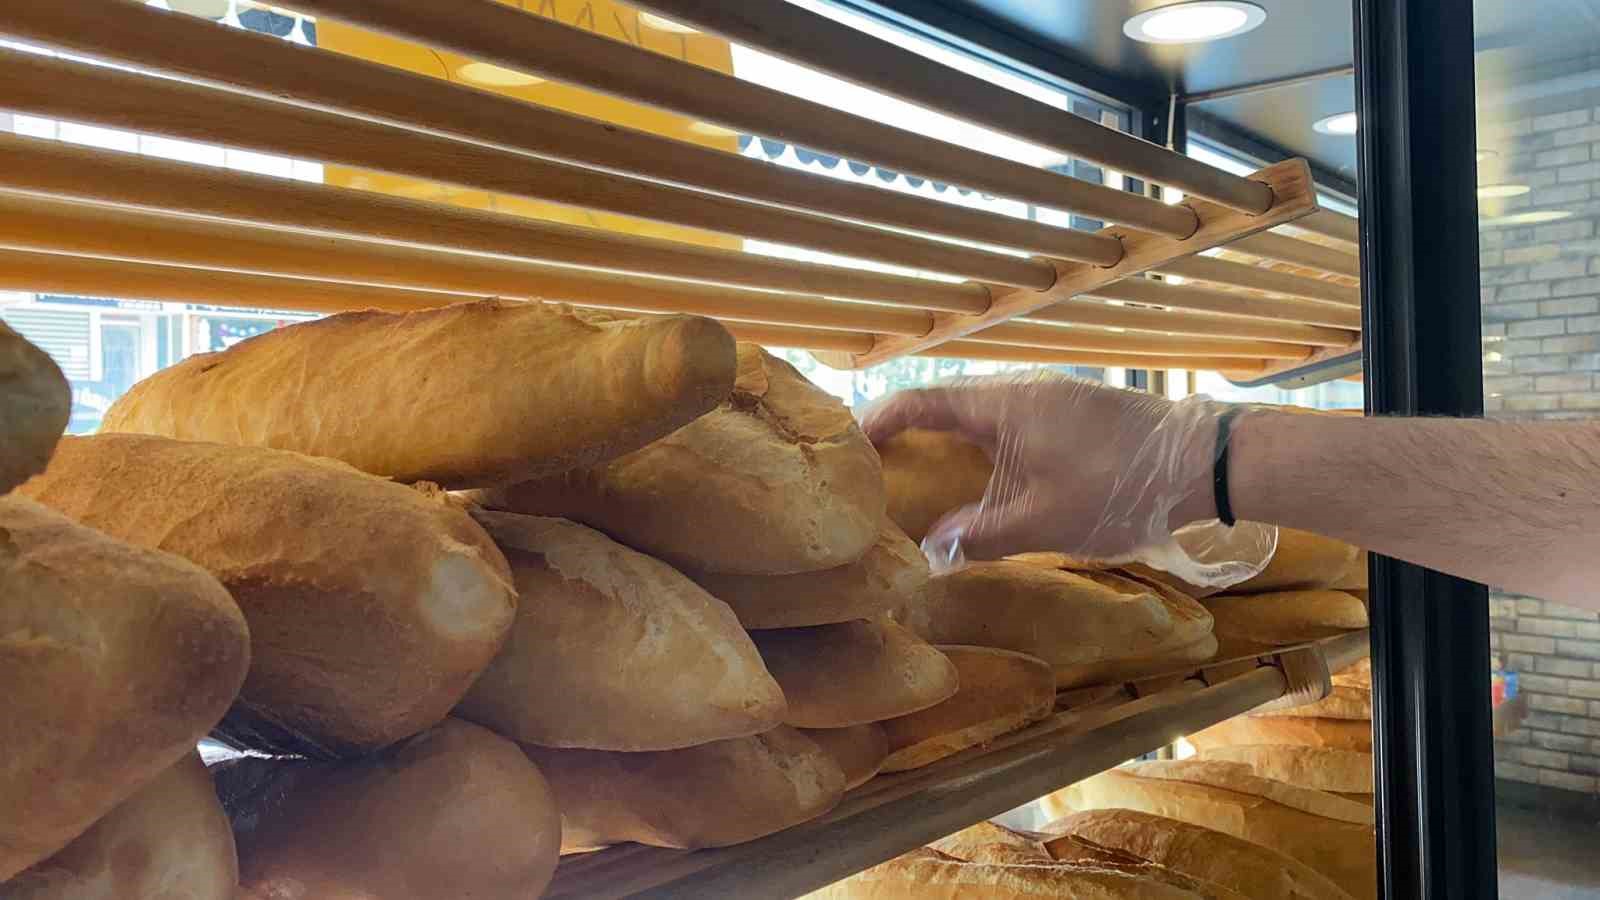 enflasyona savaş açtı: 200 gram ekmeğin fiyatını 8 tl’den 5 tl’ye indirdi